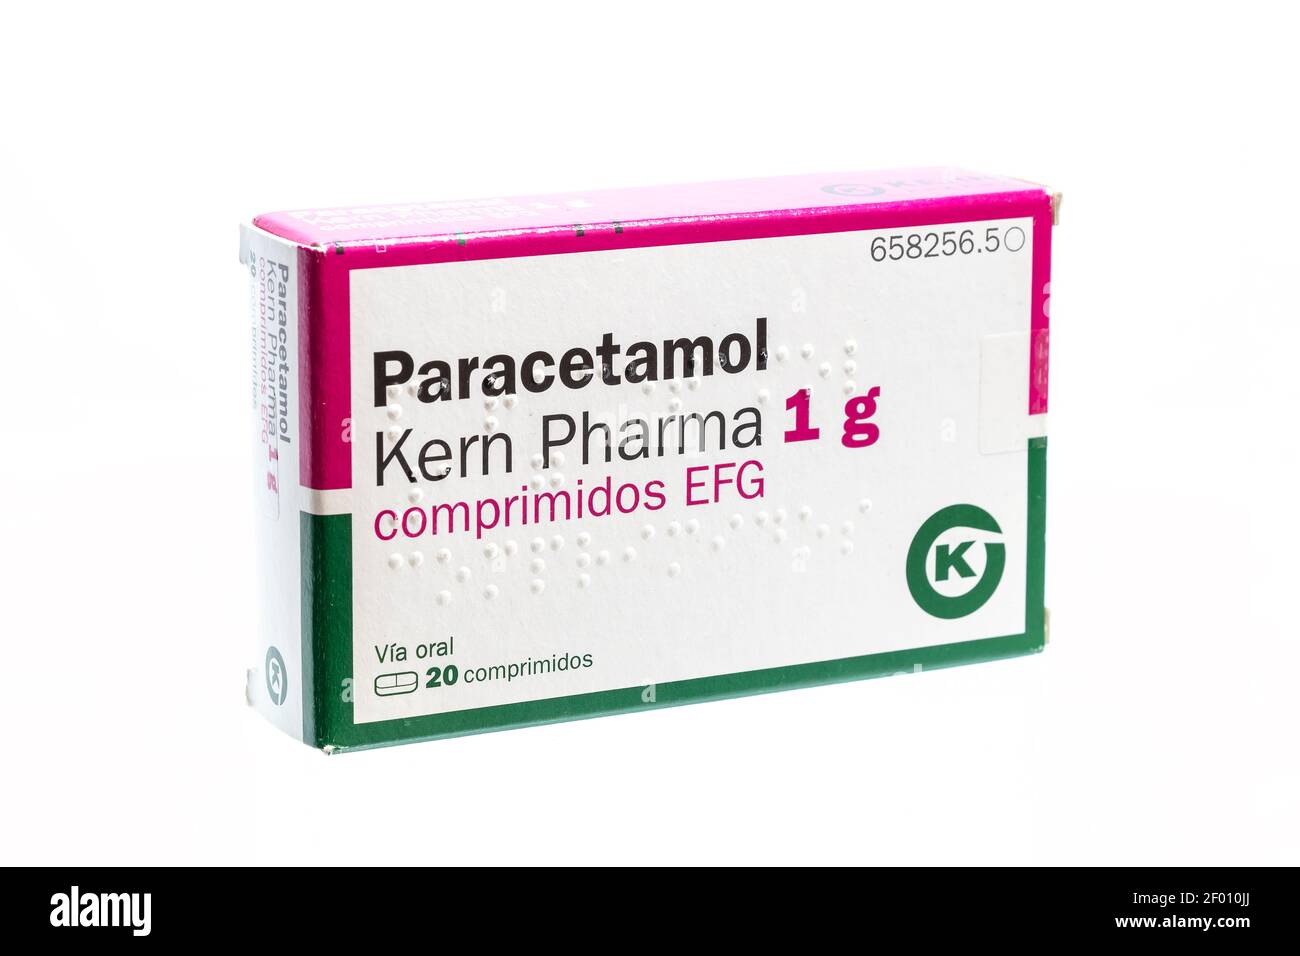 Huelva, Spanien - 6. März 2021: Spanische Schachtel Paracetamol Kern Pharma. Auch bekannt als Acetaminophen, ist ein Medikament zur Behandlung von Schmerzen und Fieber Stockfoto